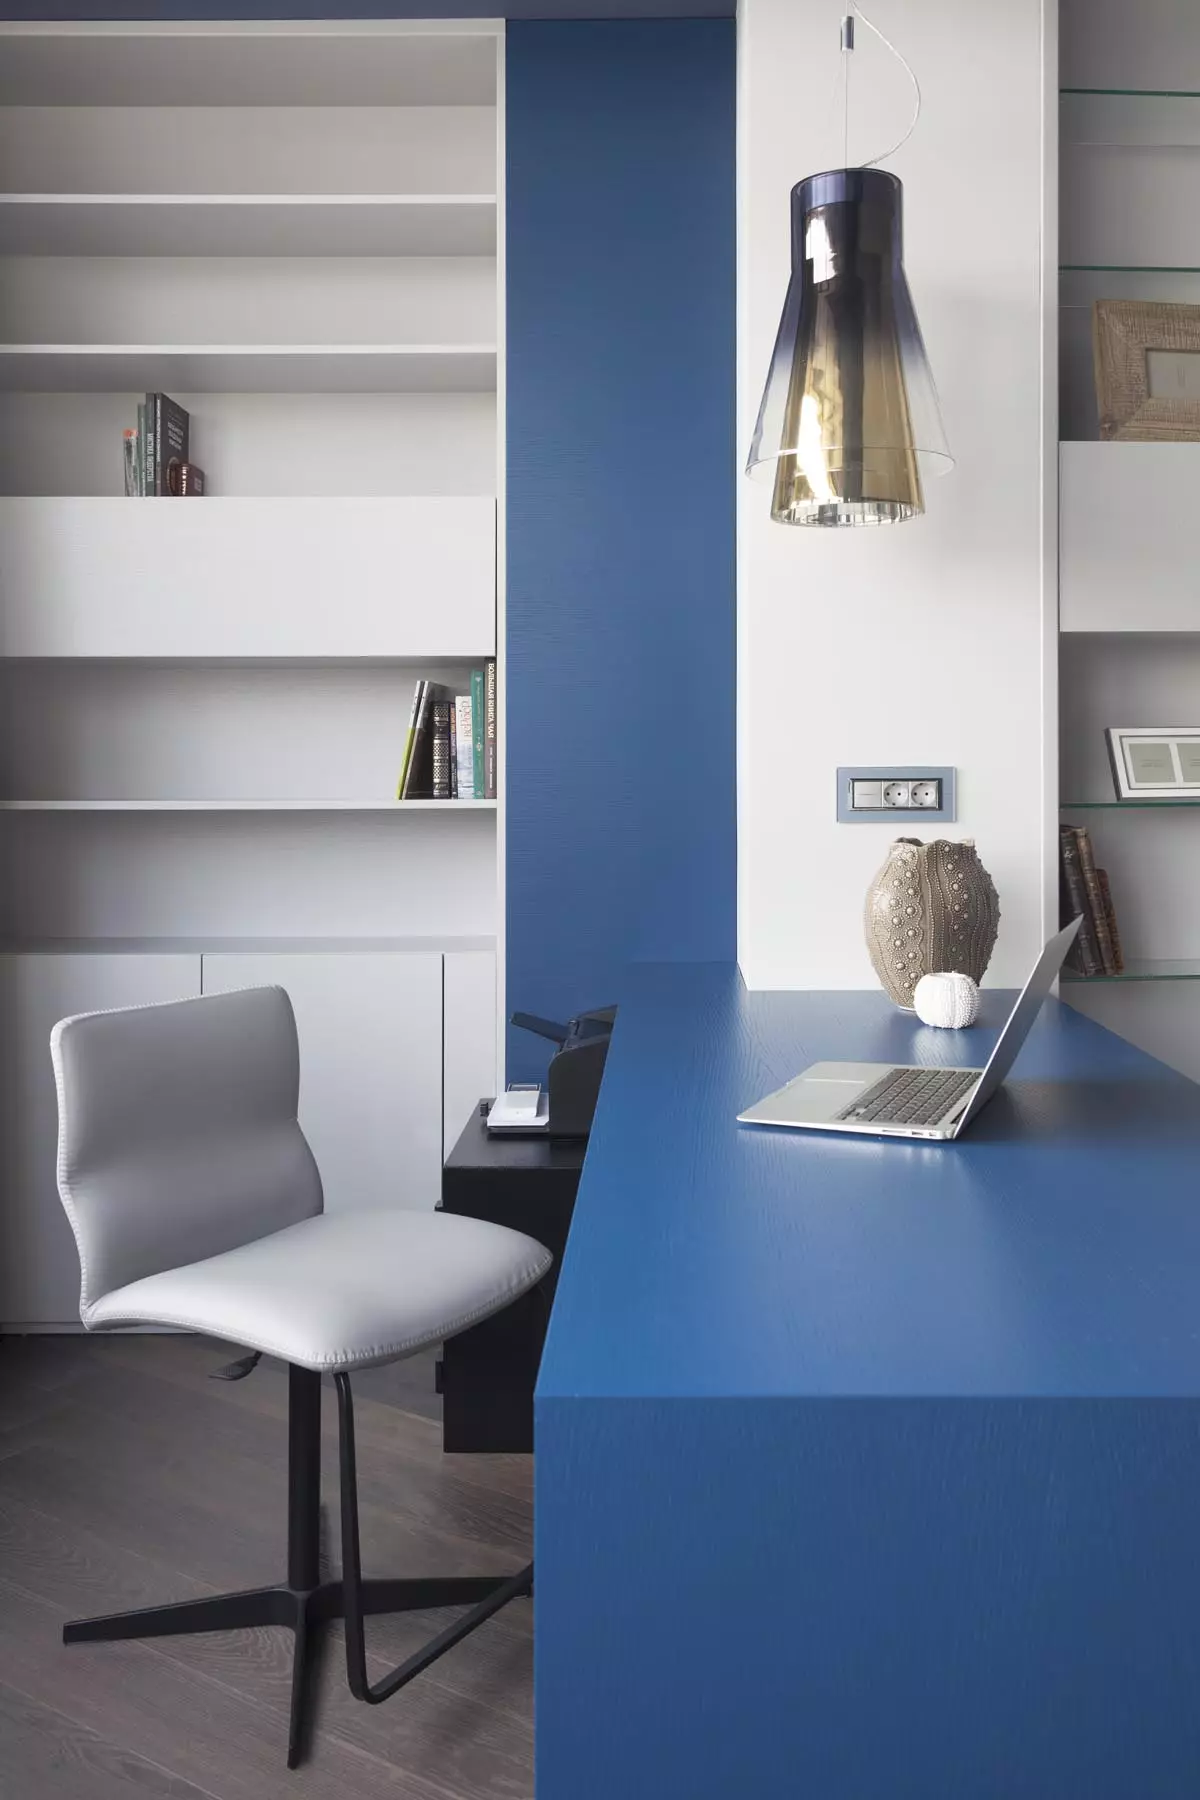 شقة تخطيط غير عادي: تصميم بألوان زرقاء